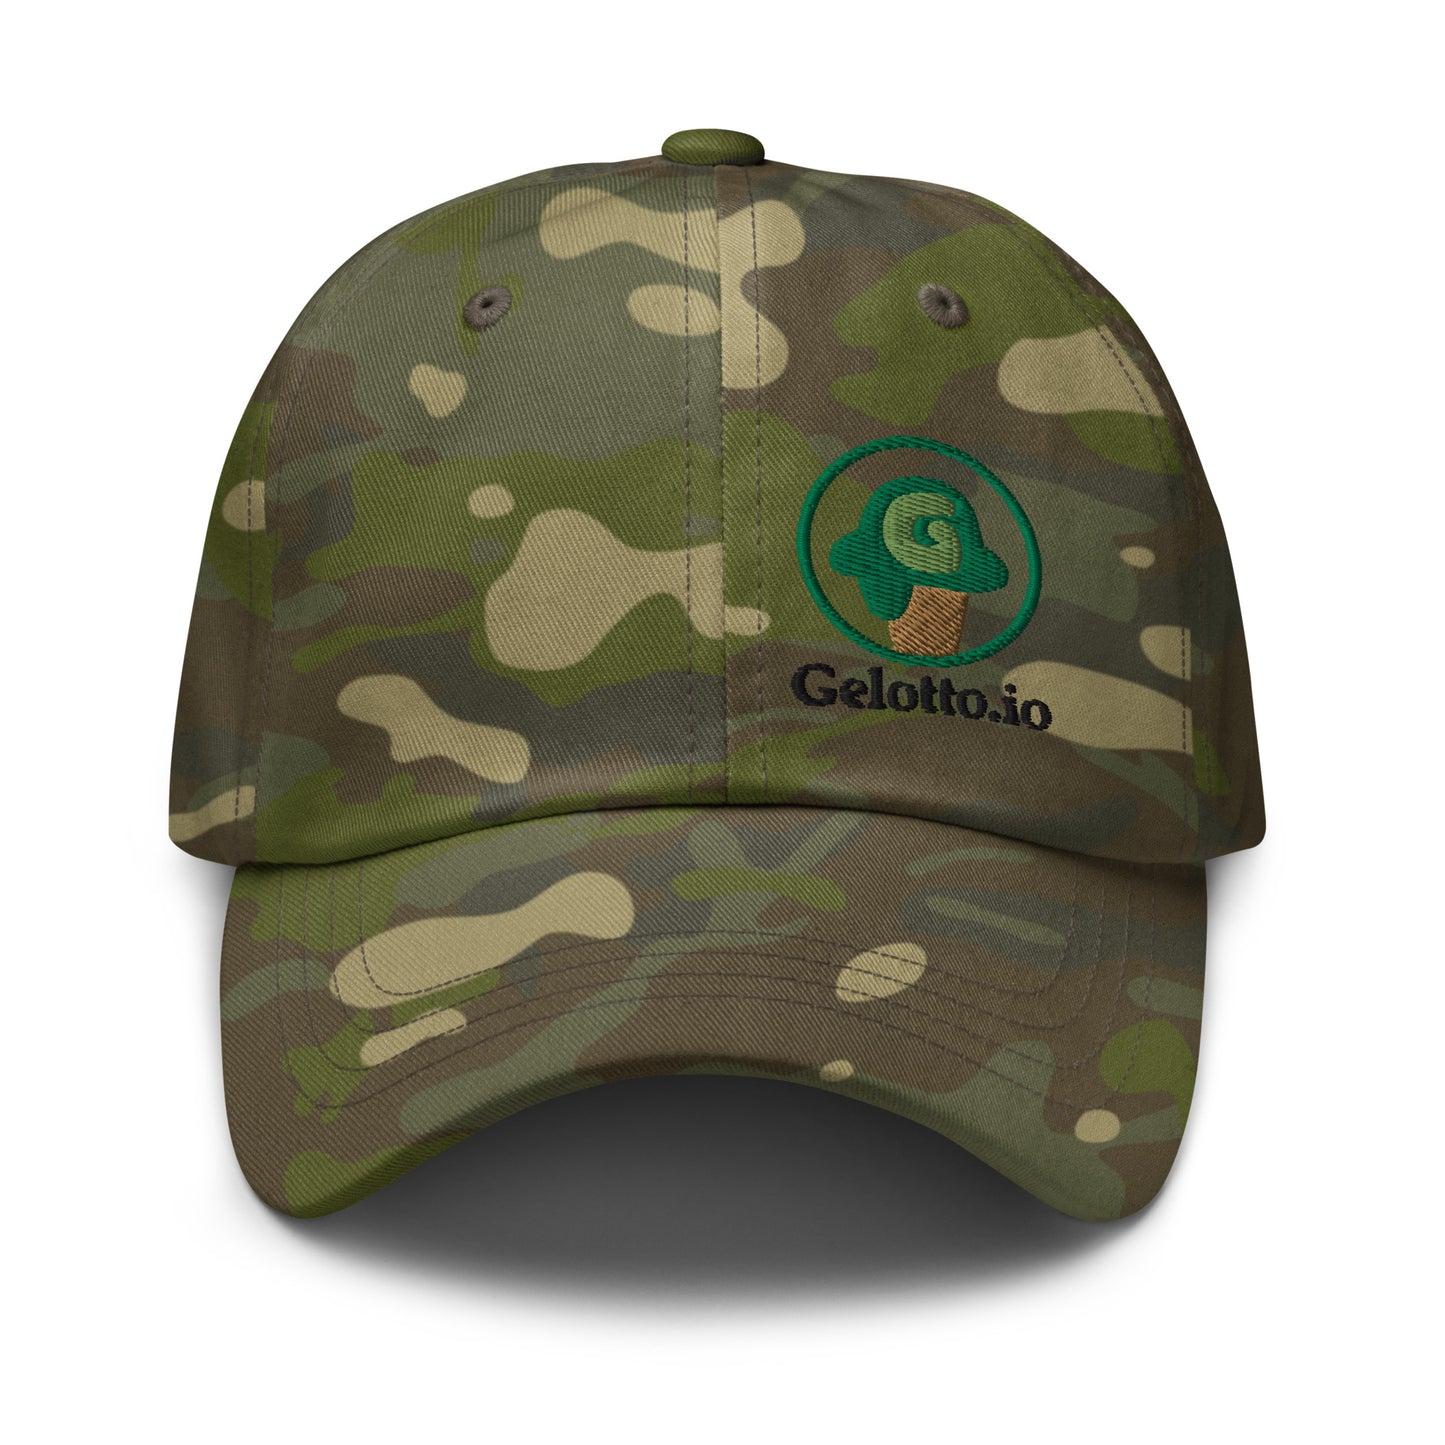 Gelotto logo Multicam Dad hat (green and black logo)